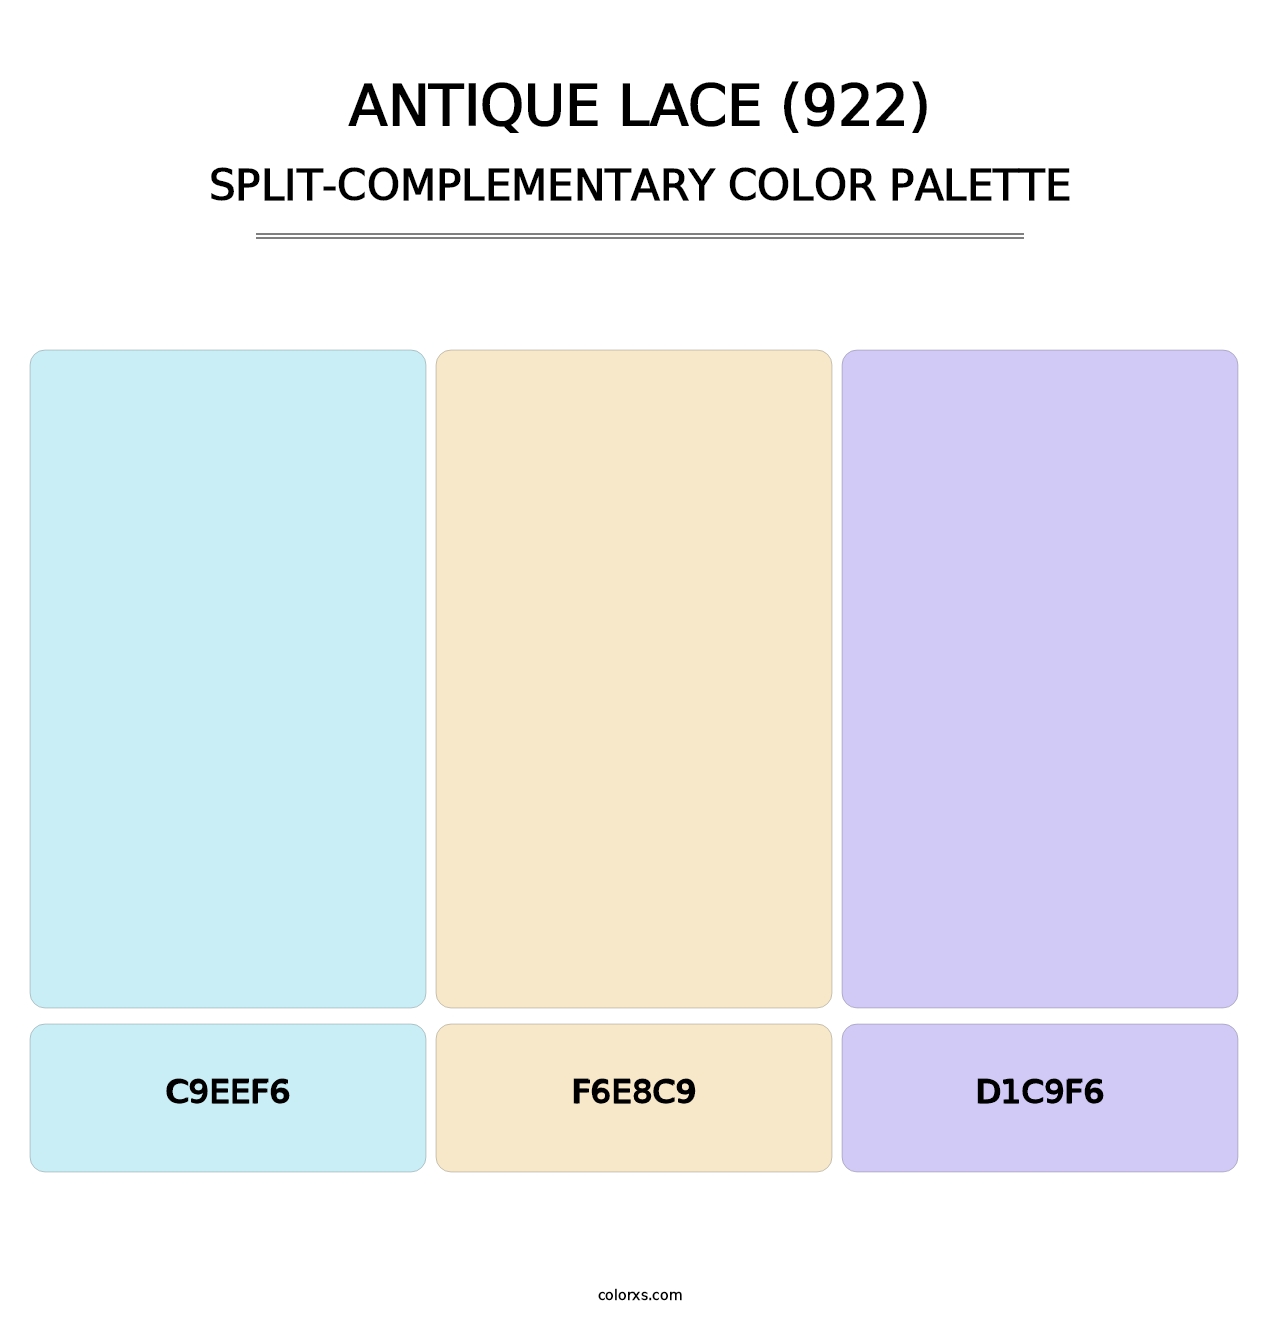 Antique Lace (922) - Split-Complementary Color Palette